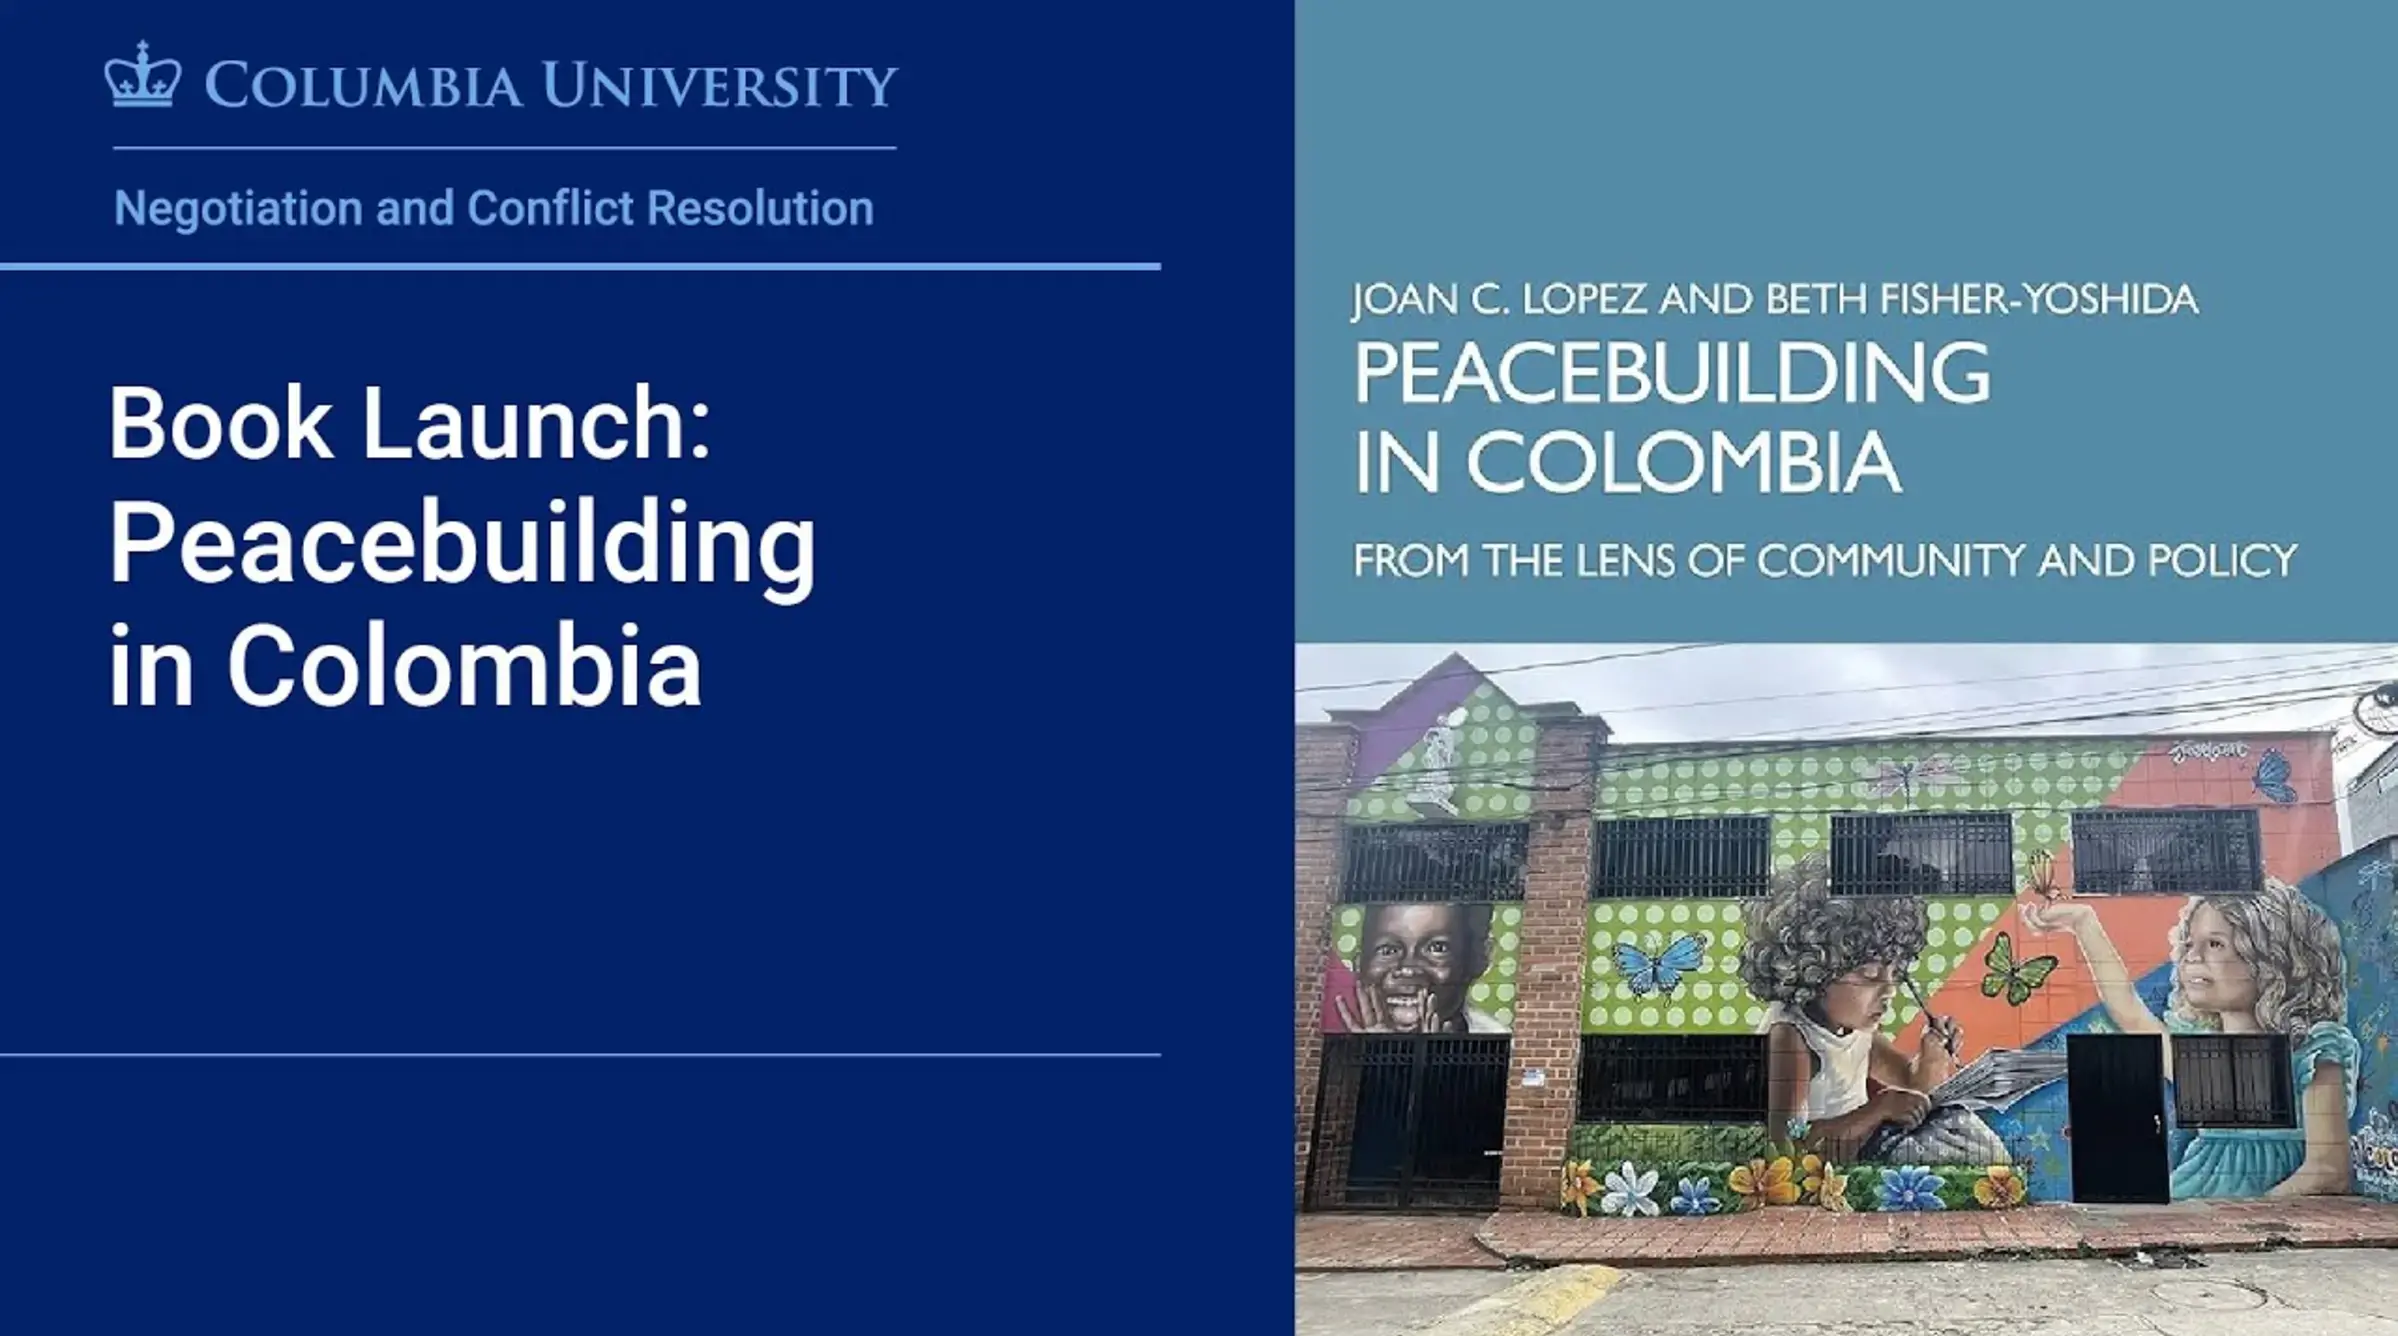 NECR Peacebuilding Launch Video